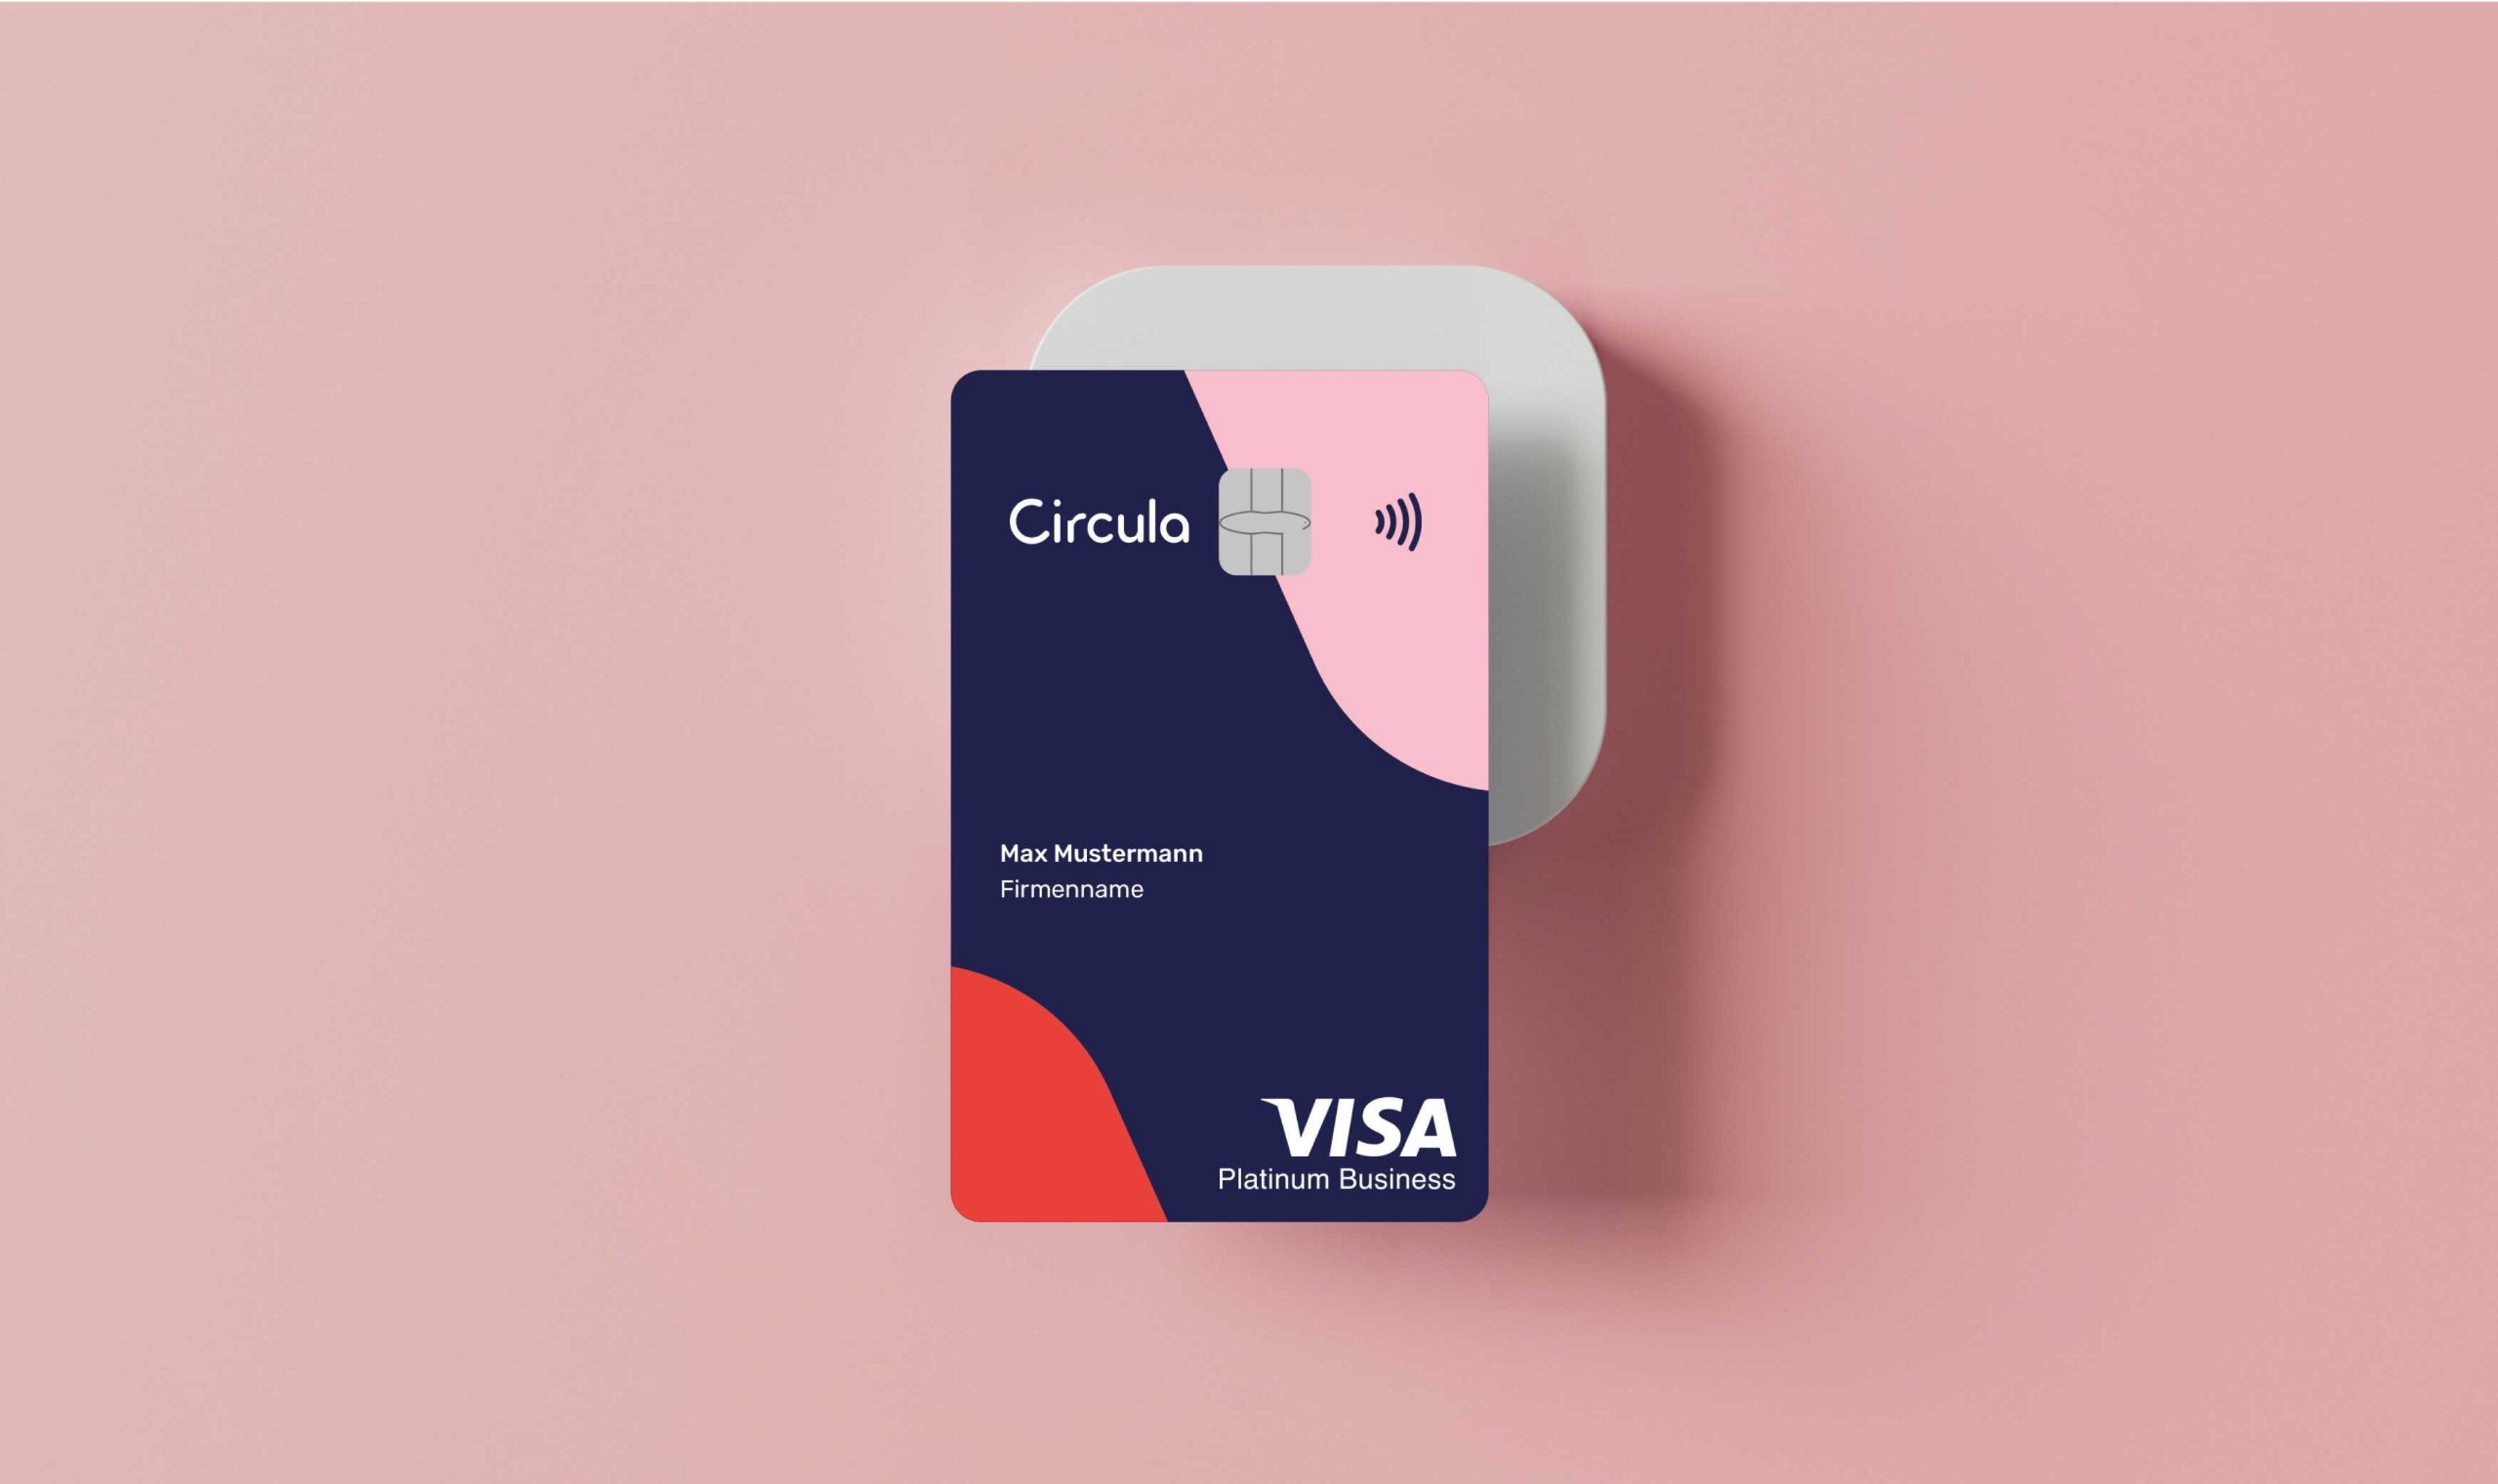 Transaktionen über die Circula Firmenkreditkarte werden automatisch mit den richtigen Belegen abgeglichen.